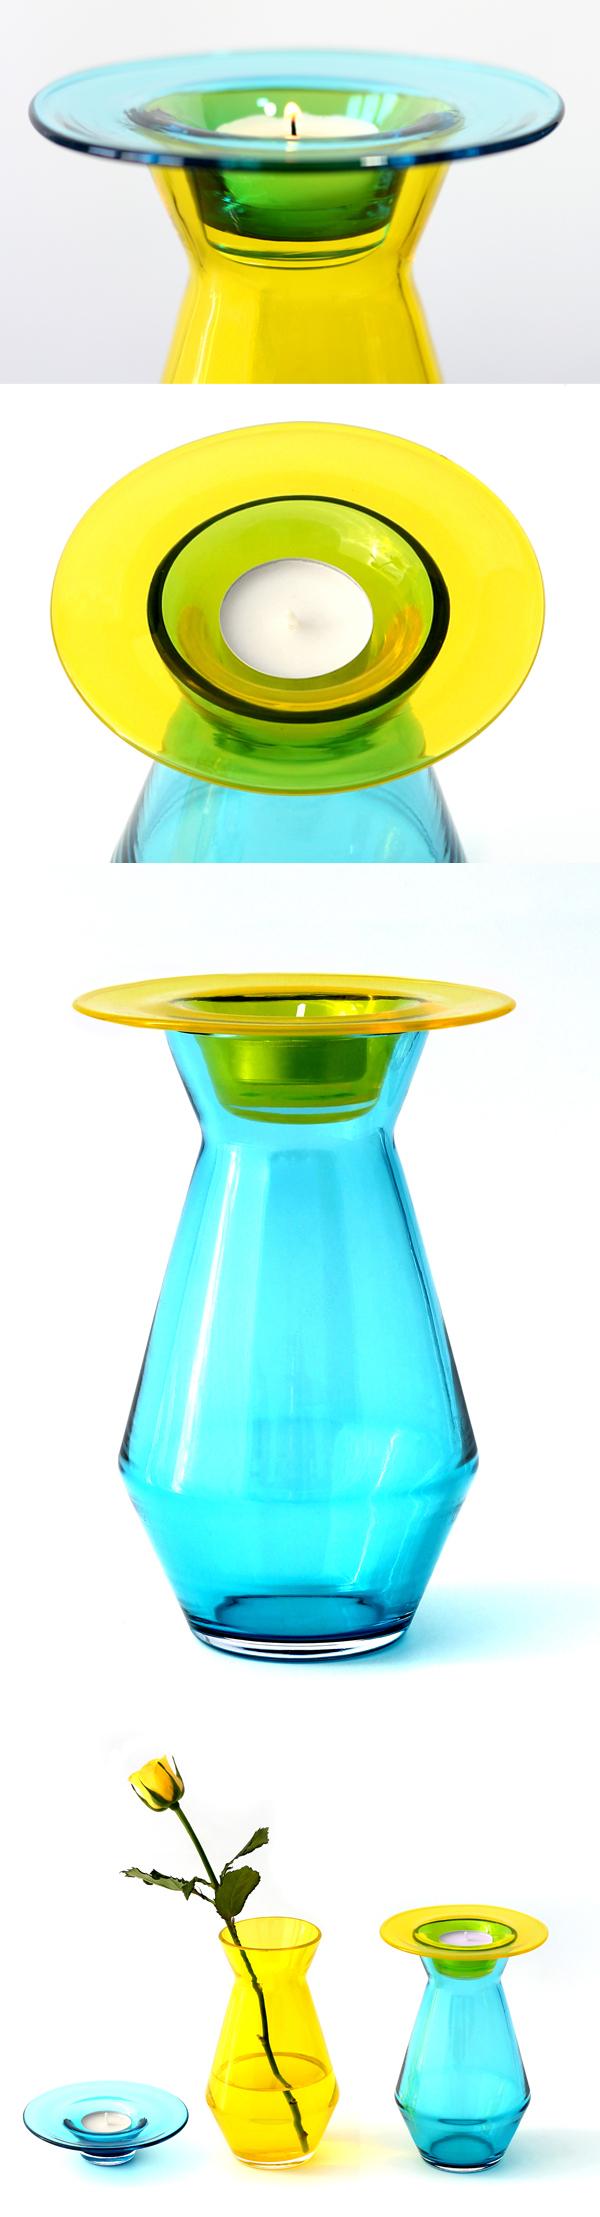 candle vase© 2011-2012YangRipol